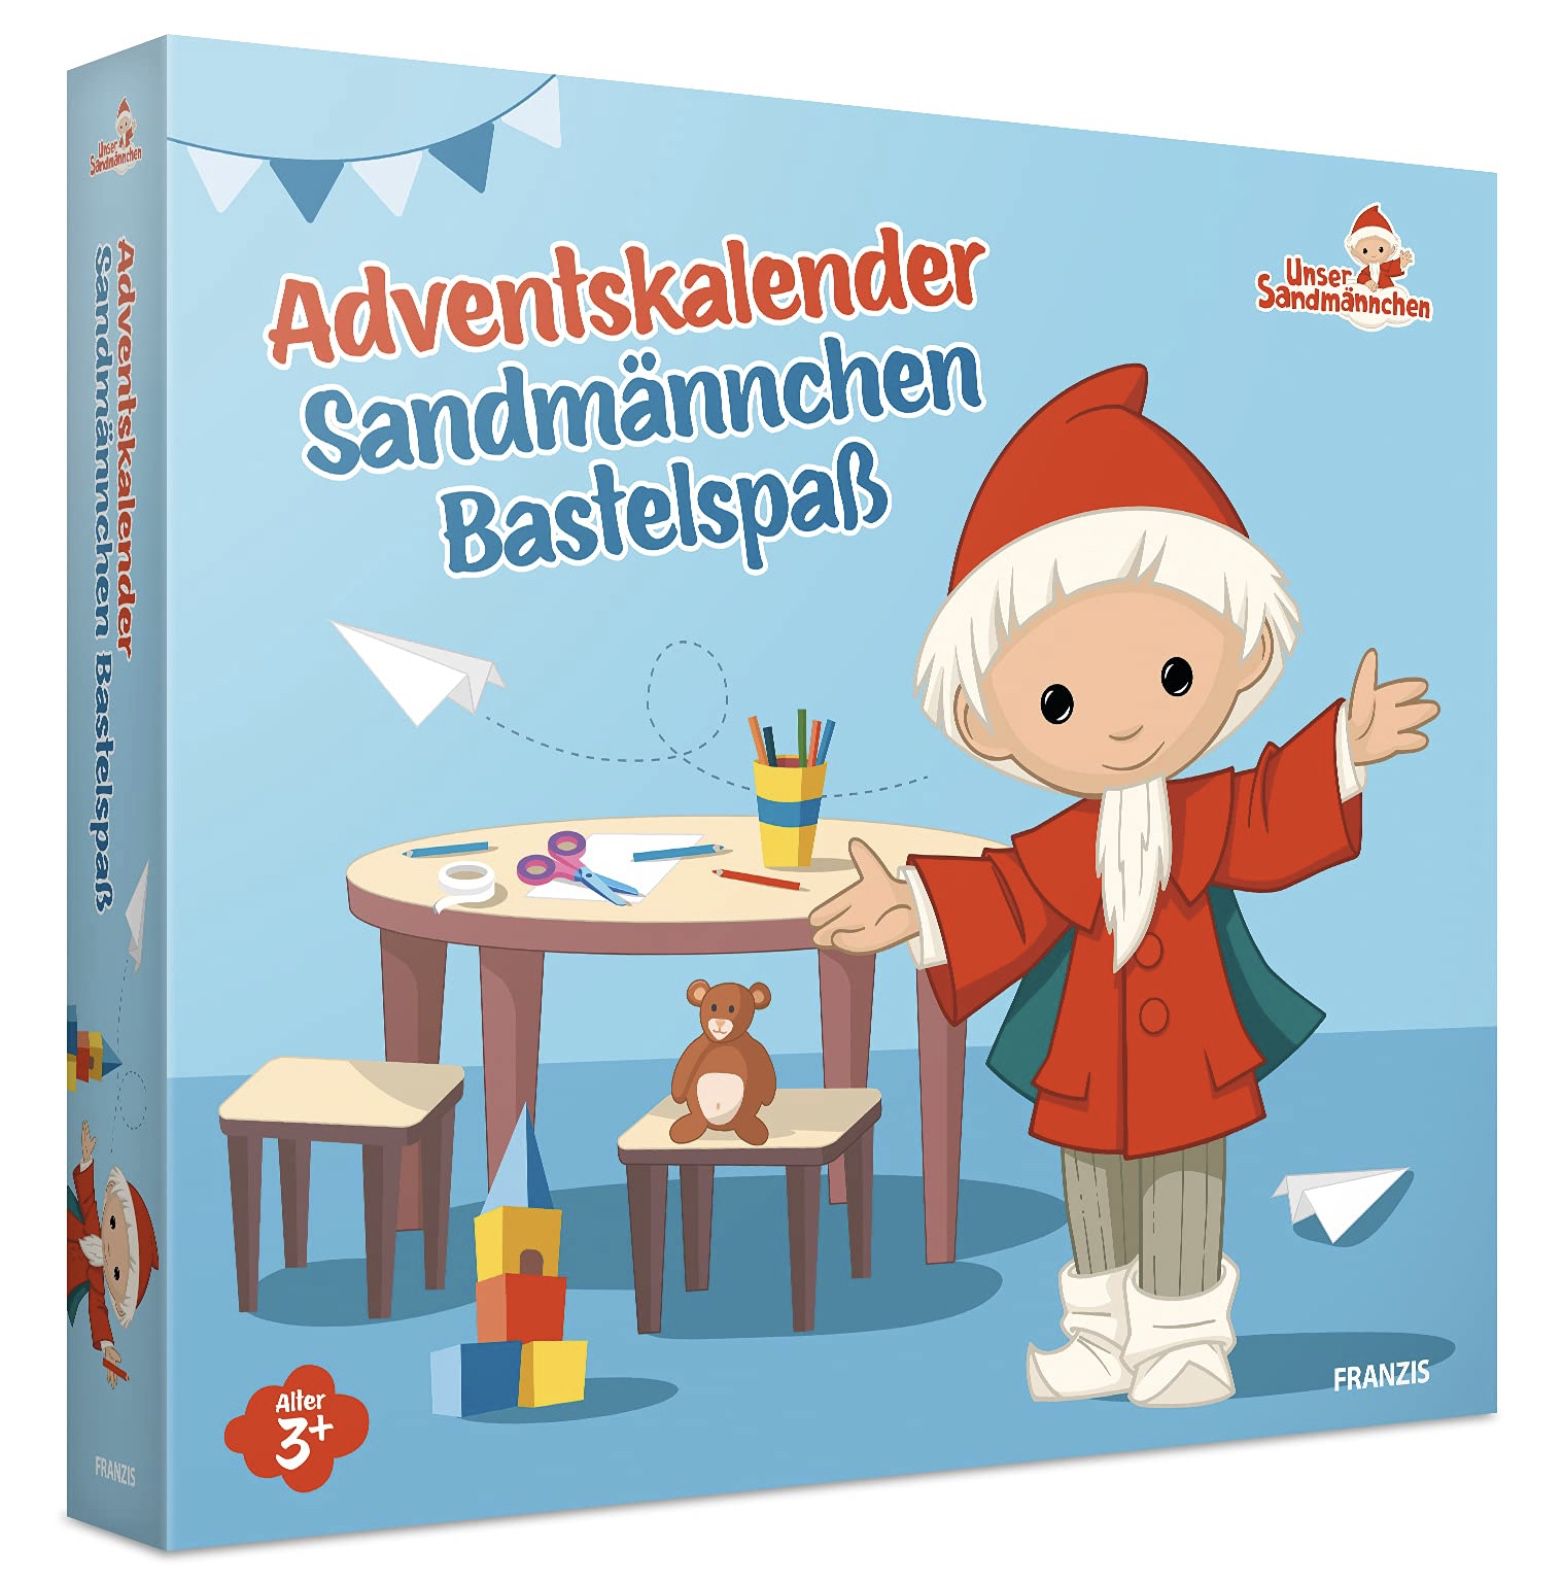 Franzis Sandmännchen Adventskalender mit Bastel Sets für 4,91€ (statt 15€)